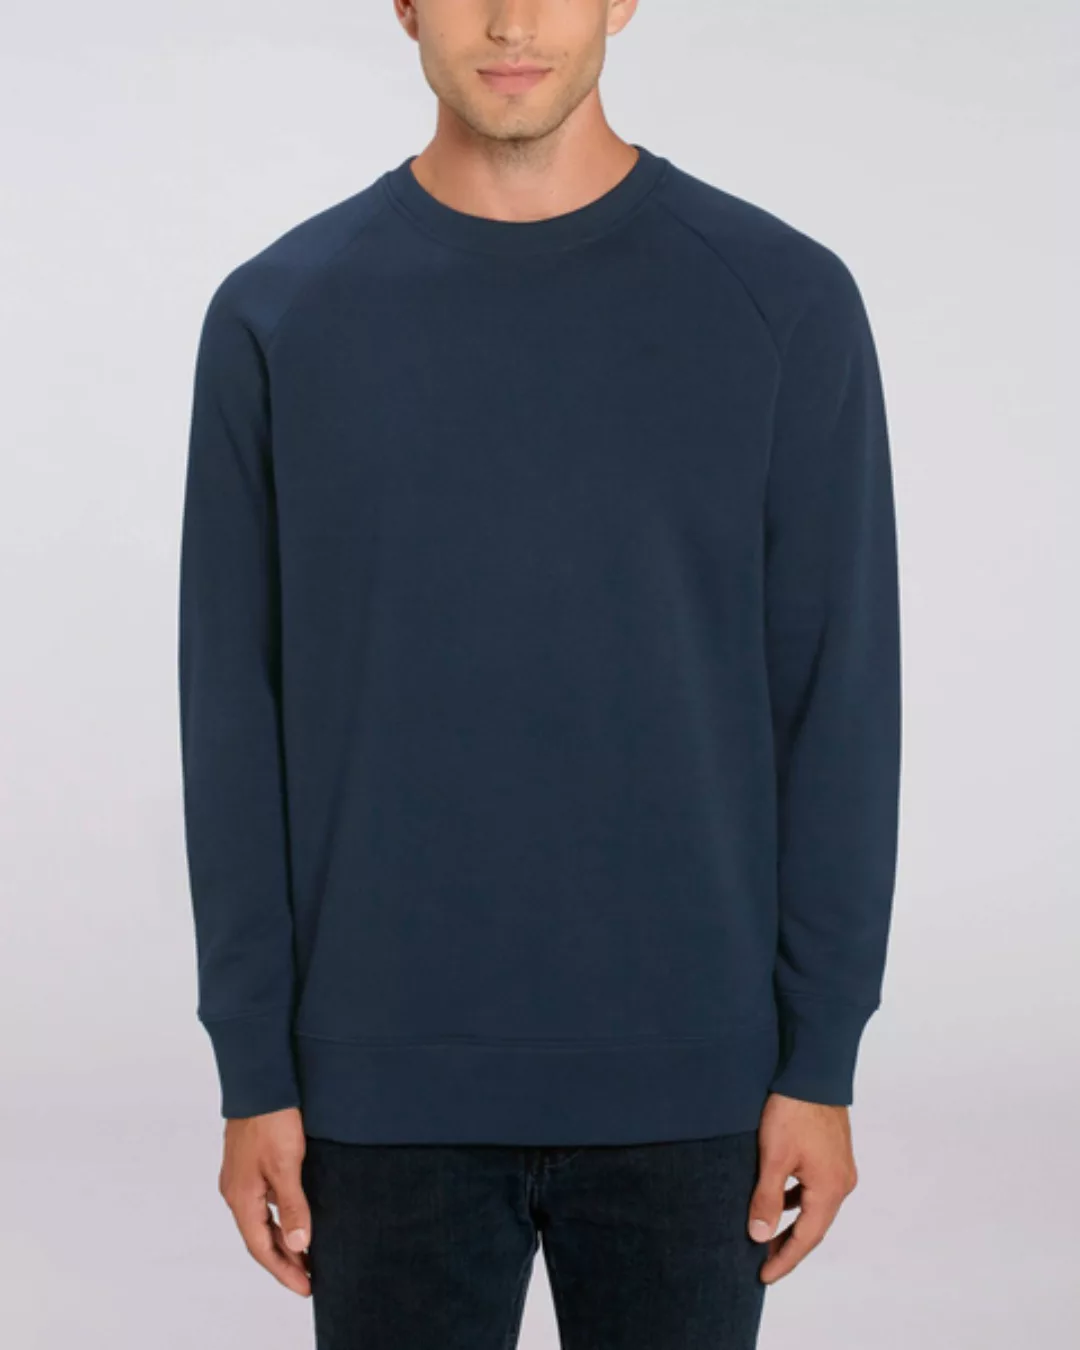 Bio Herren Rundhals-sweatshirt "Practice - Hf" In 3 Farben günstig online kaufen